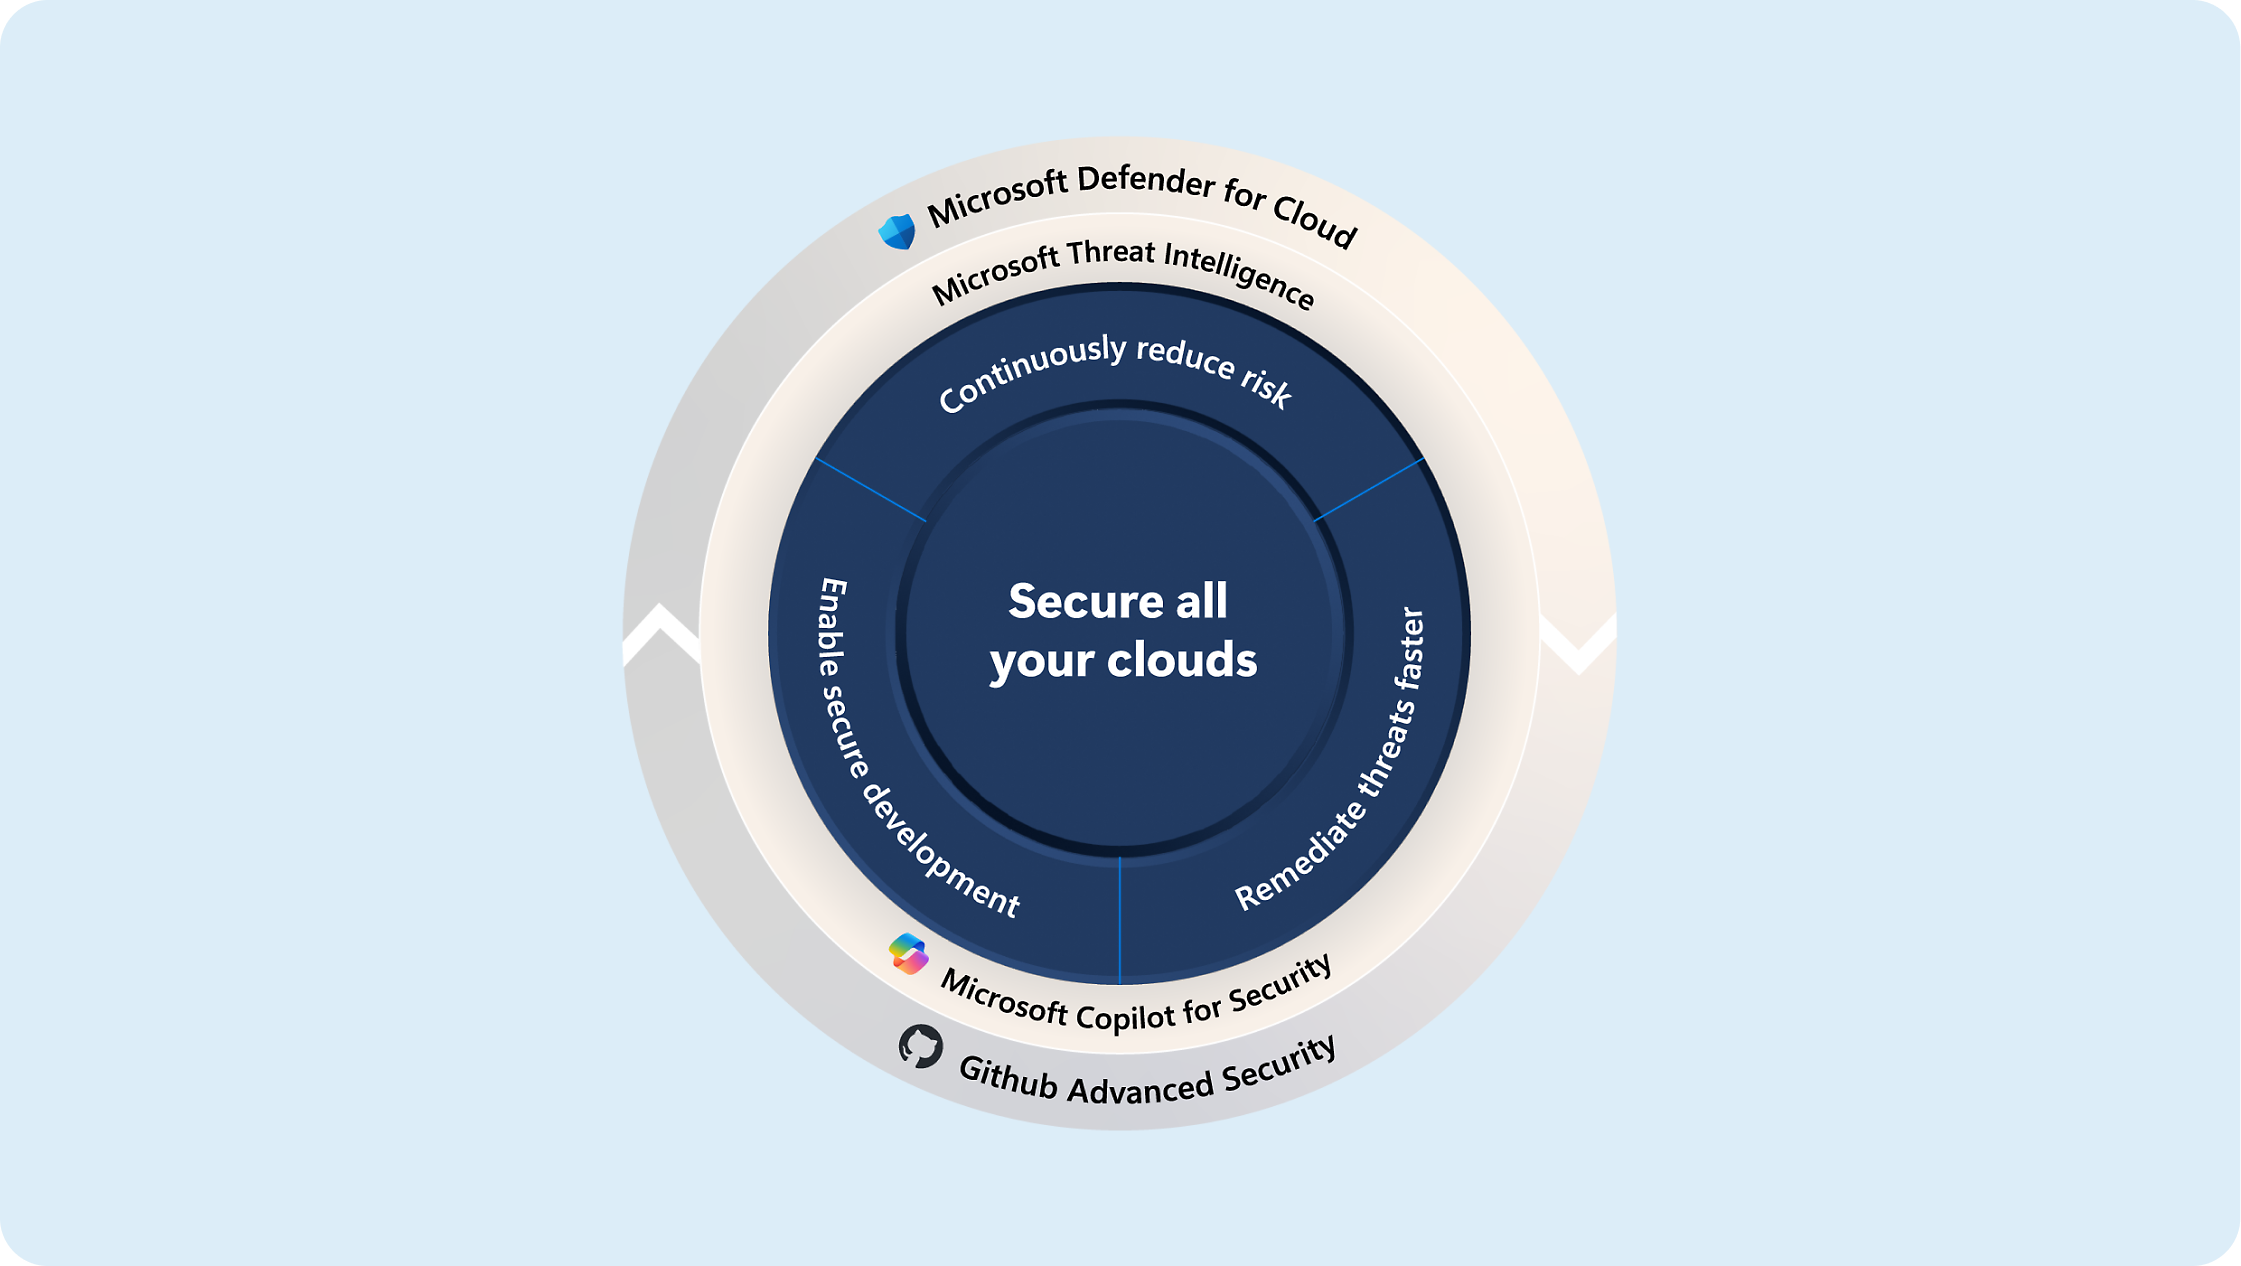 Diagram znázorňujúci stratégie na zabezpečenie cloudov pomocou programu microsoft defender, služby threat intelligence a programu copilot for security